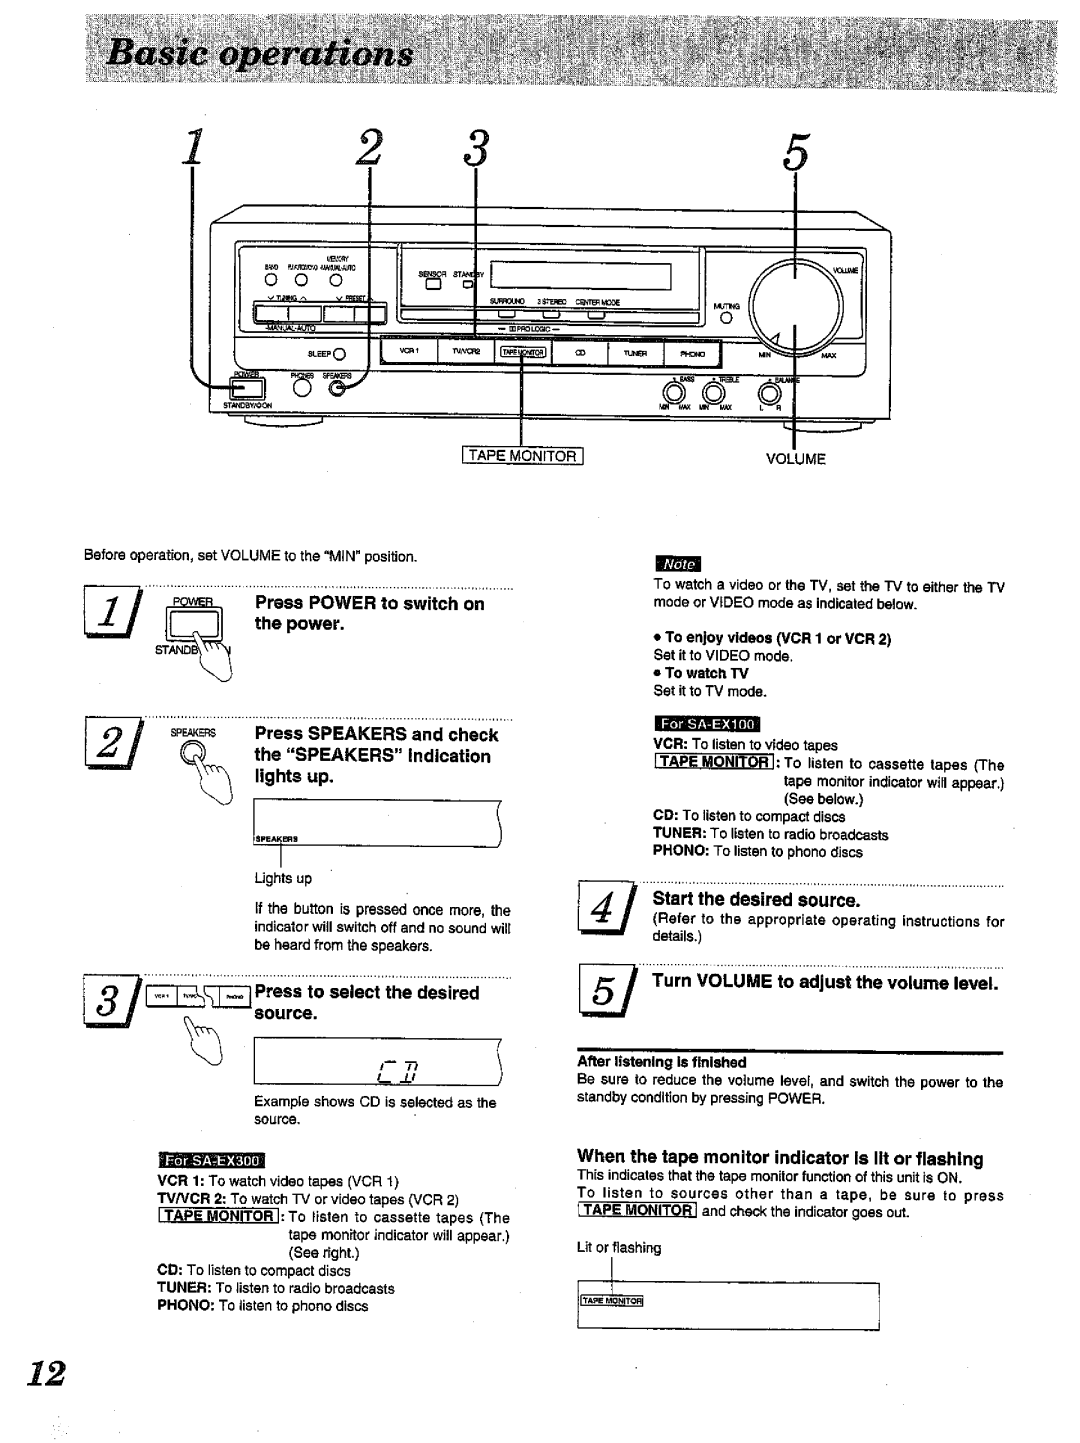 Technics SA-EX300, SA-EX100 manual 